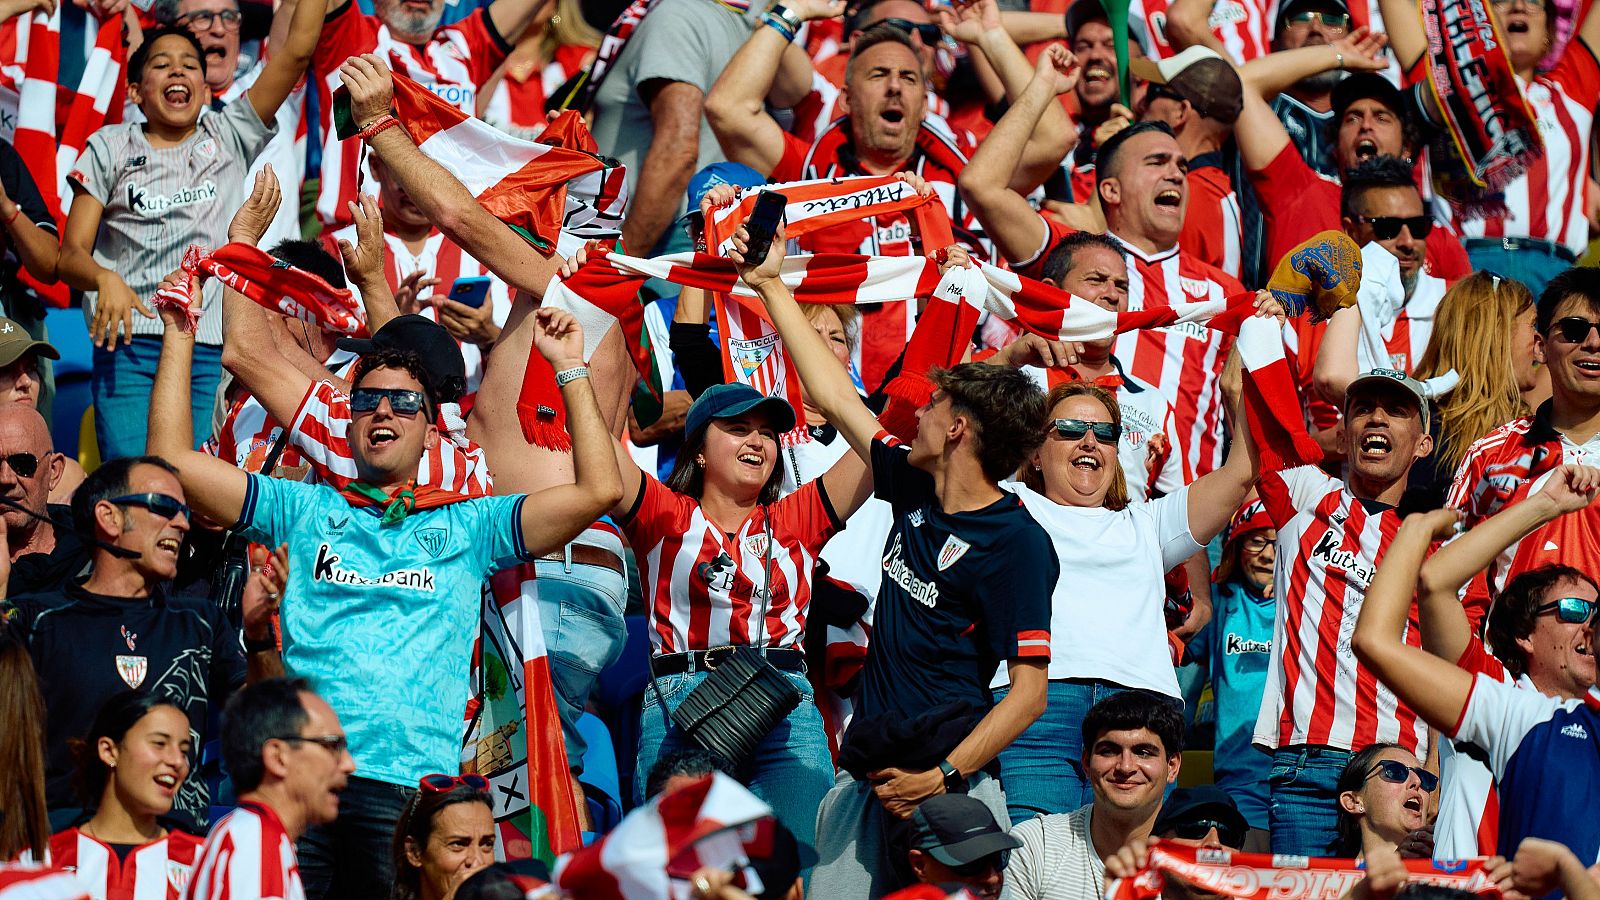 El Athletic sortea entradas para la final copera entre sus socios